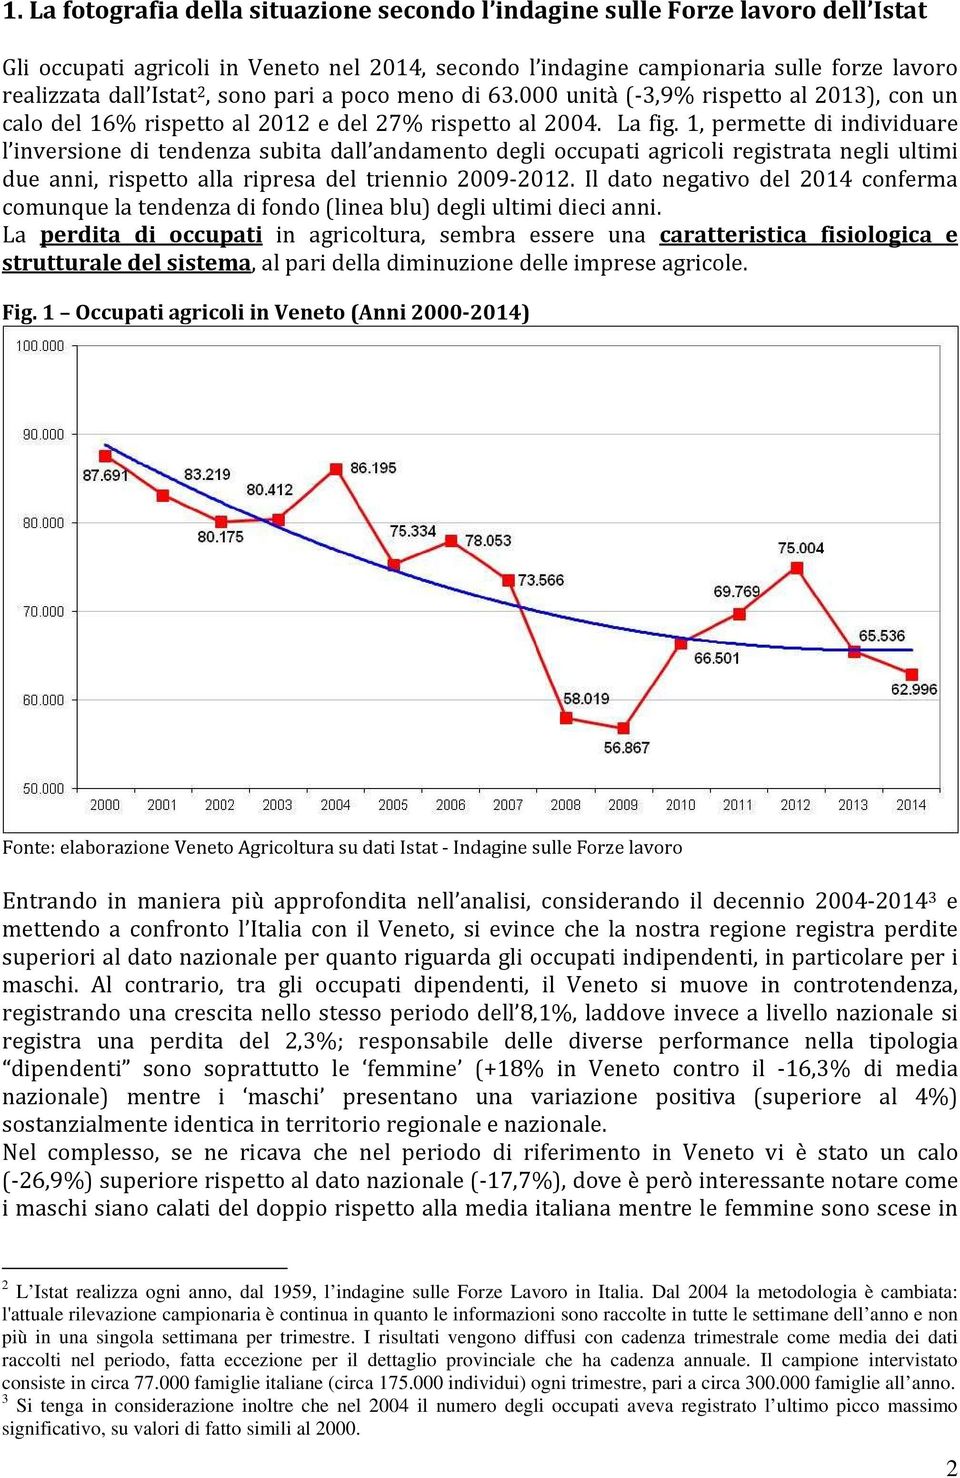 1, permette di individuare l inversione di tendenza subita dall andamento degli occupati agricoli registrata negli ultimi due anni, rispetto alla ripresa del triennio 2009-2012.